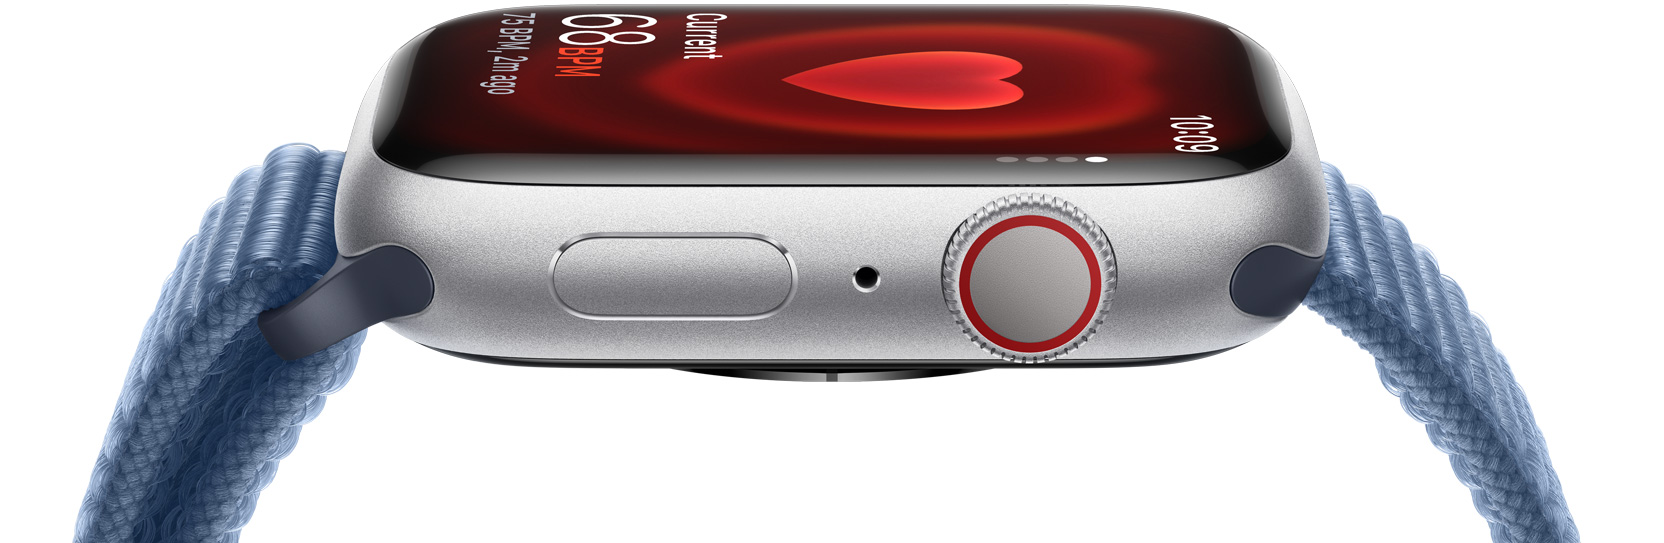 Widok z boku na wyświetlacz Apple Watch przedstawiający wynik pomiaru tętna.